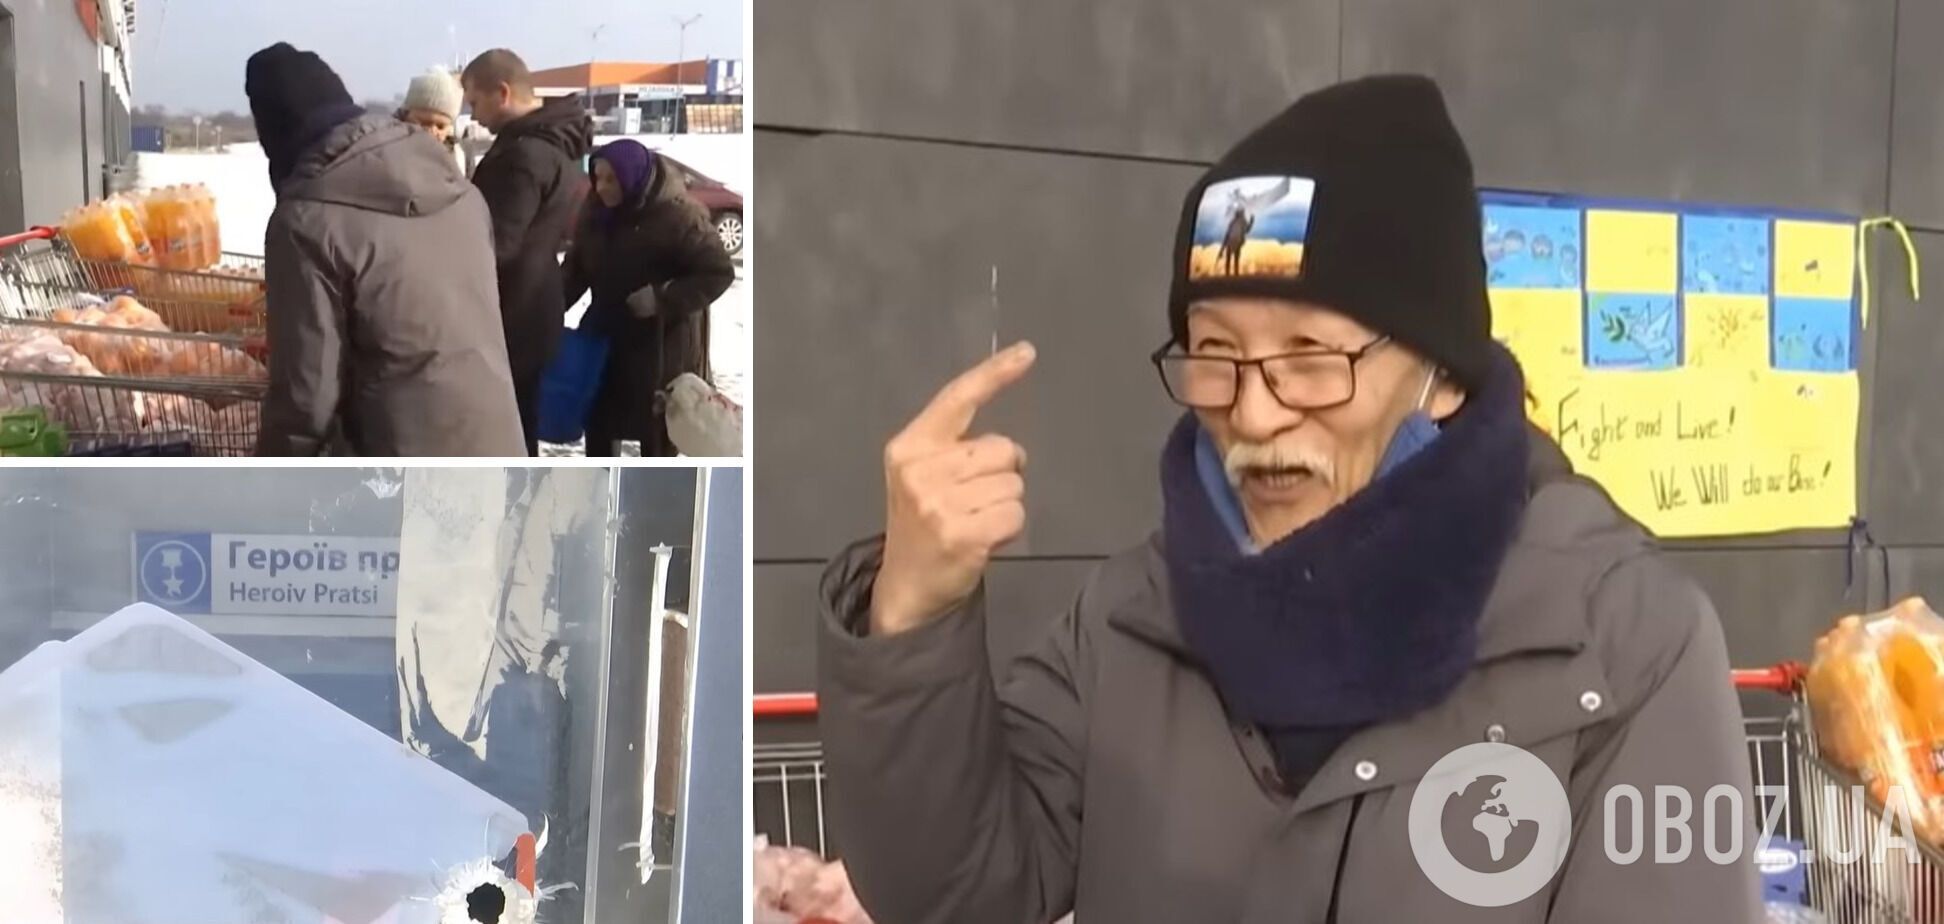 "Харків – це круто": 75-річний японець дев'ять місяців прожив у харківському метро і вирішив назавжди лишитися в Україні. Відео 